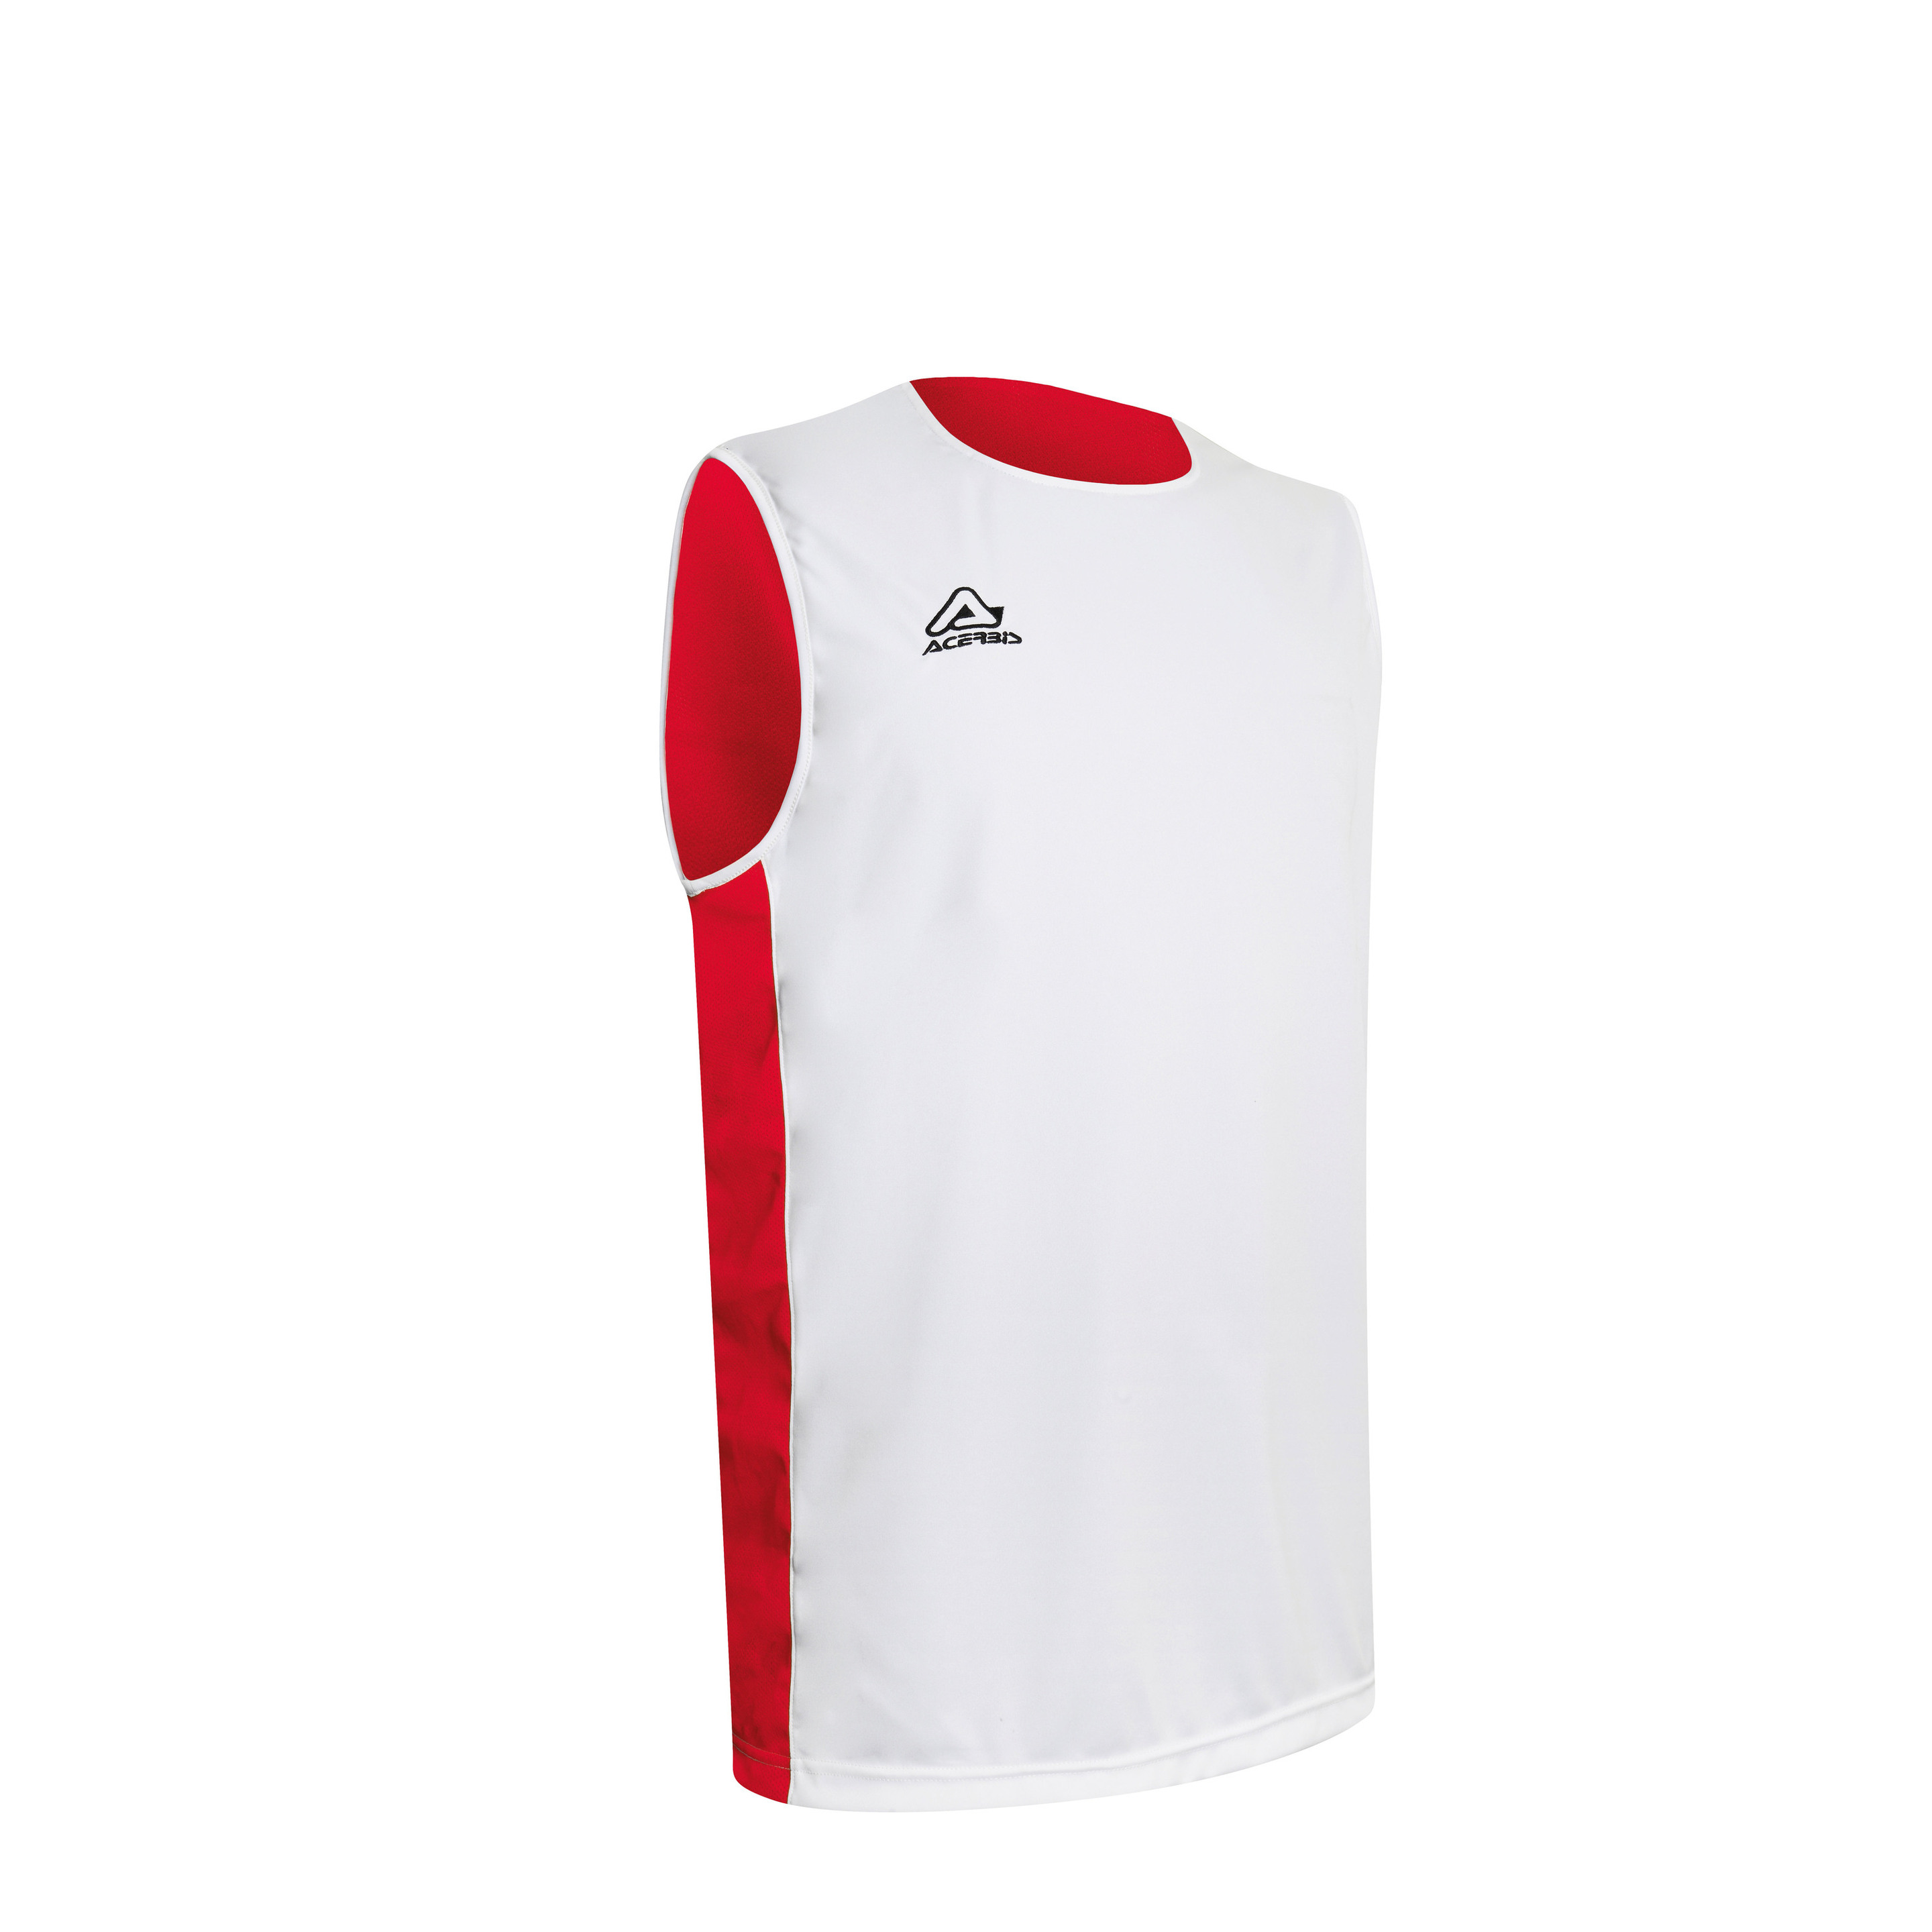 Camiseta Acerbis Larry Sin Manga Reversible - Blanco/Rojo - Camiseta Deportiva  MKP